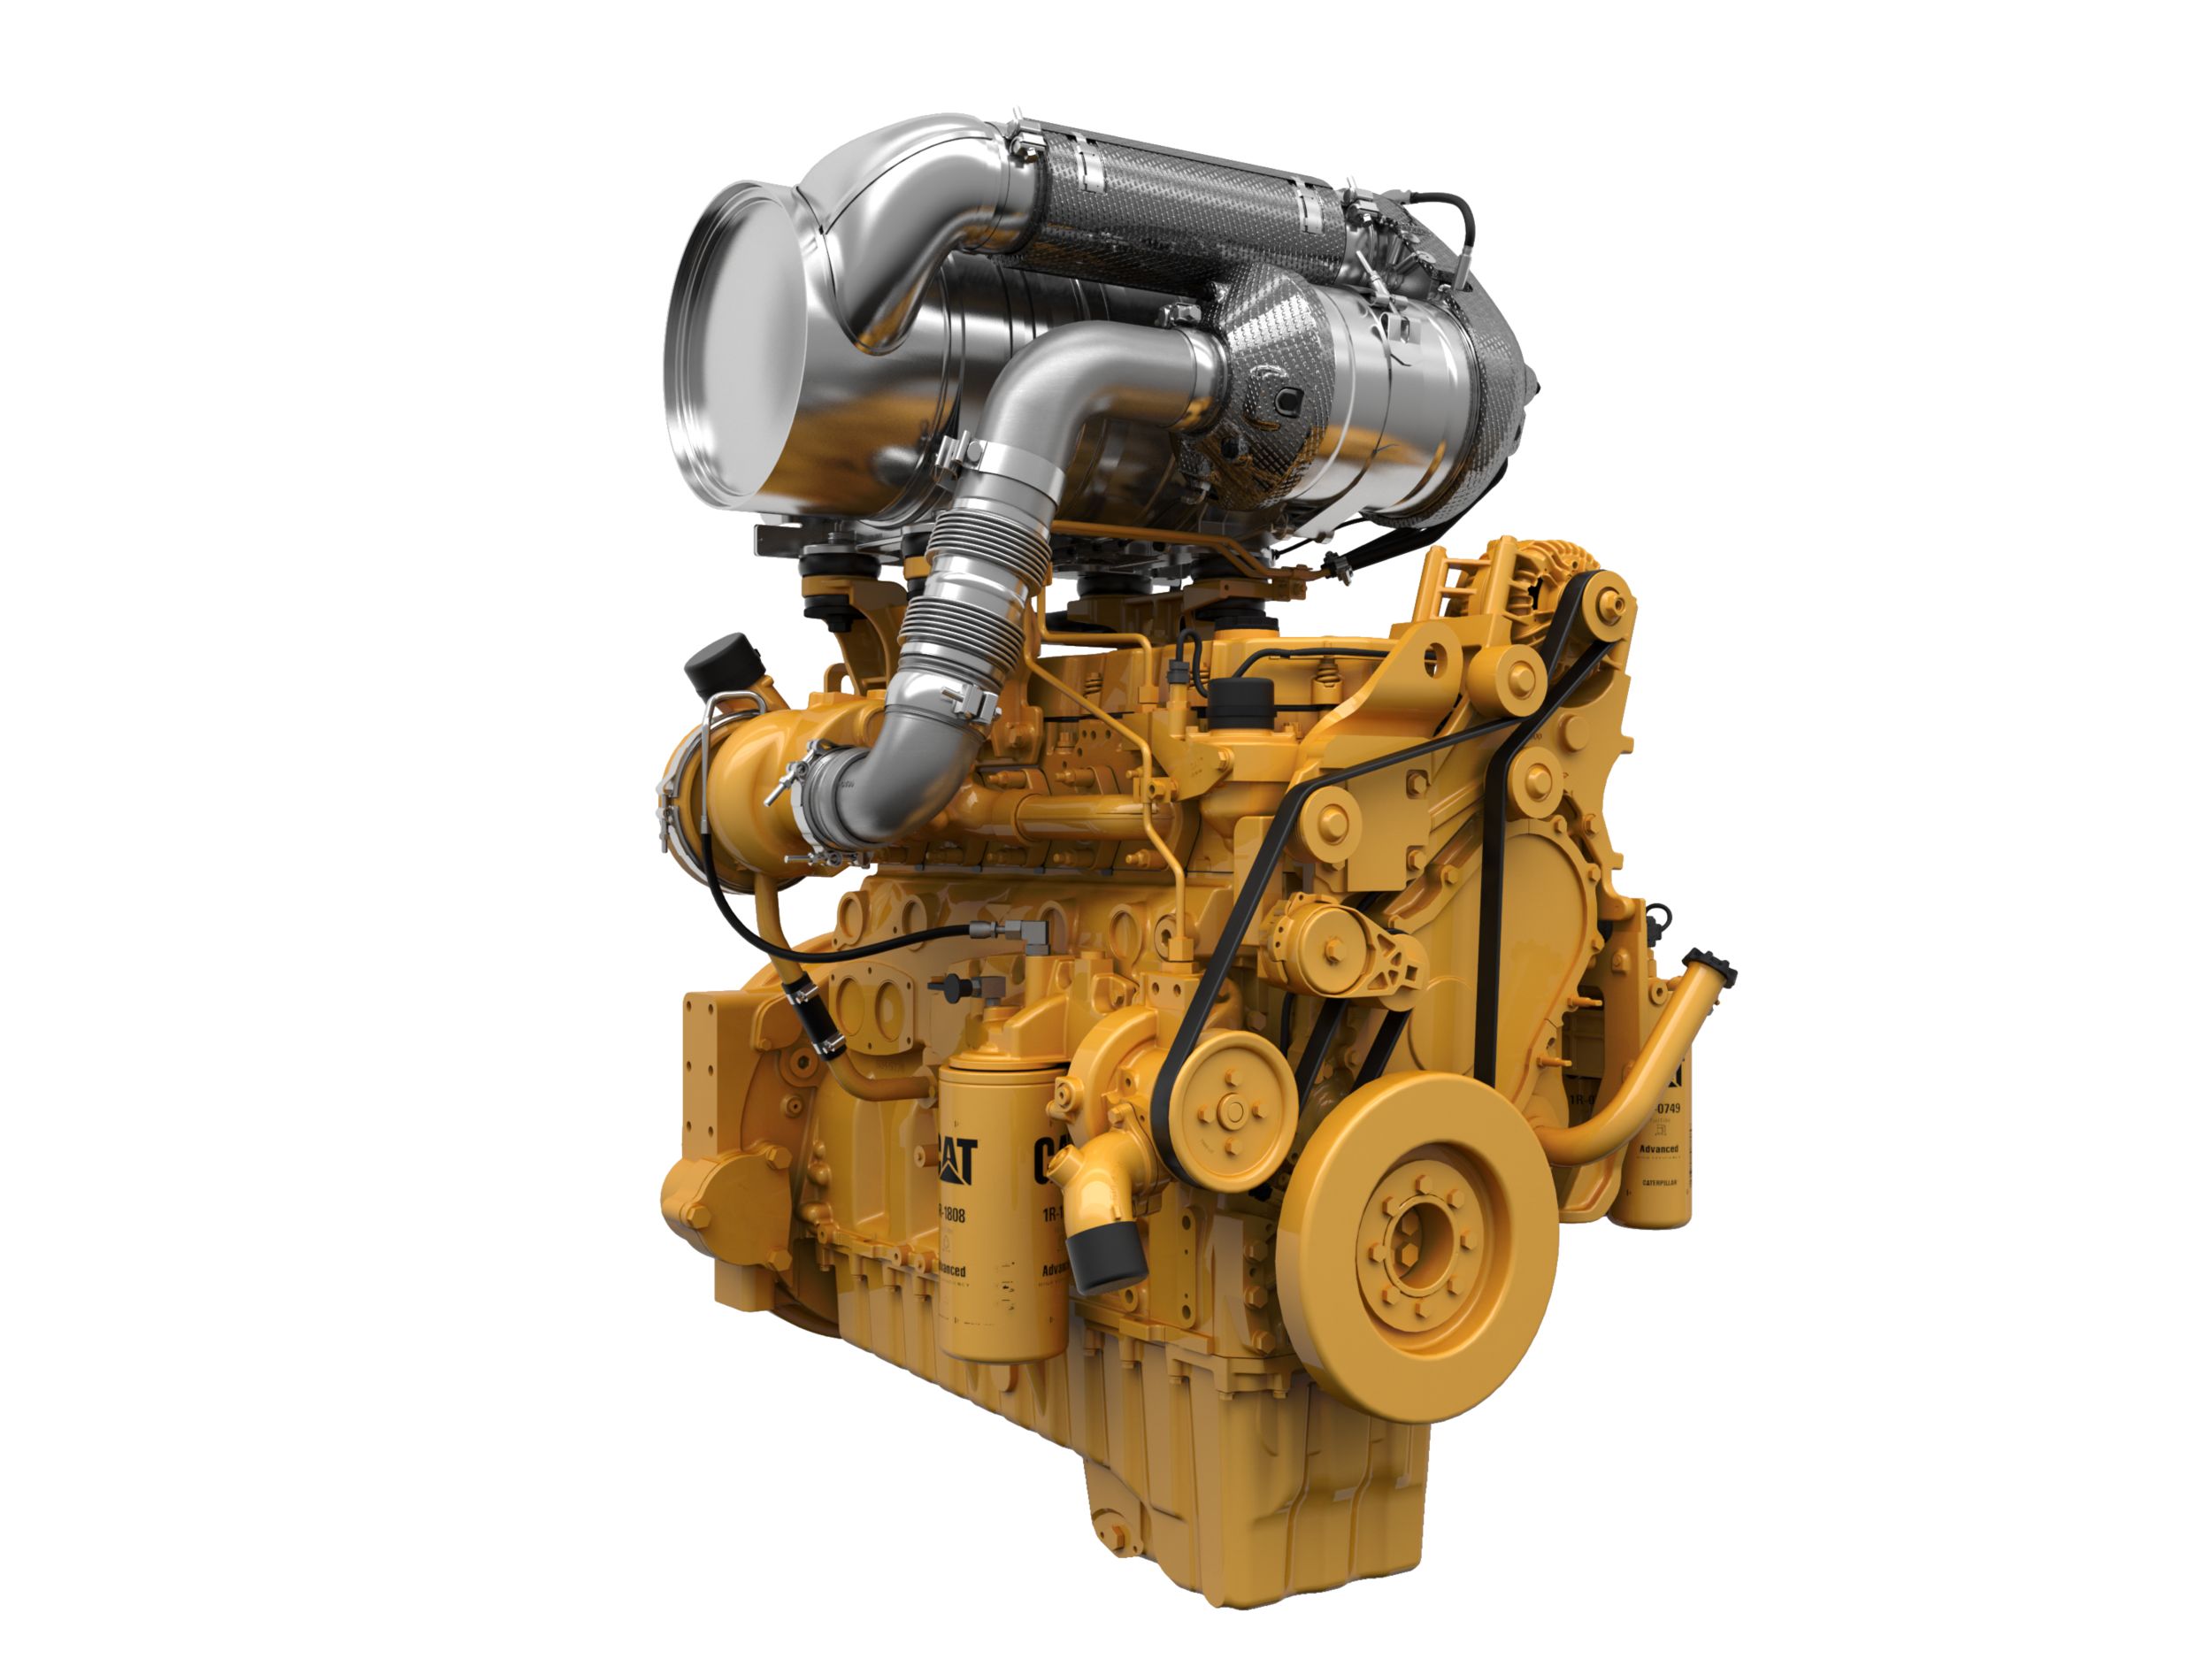 Дизельные двигатели C9.3B Tier 4 — для регионов со строгими требованиями